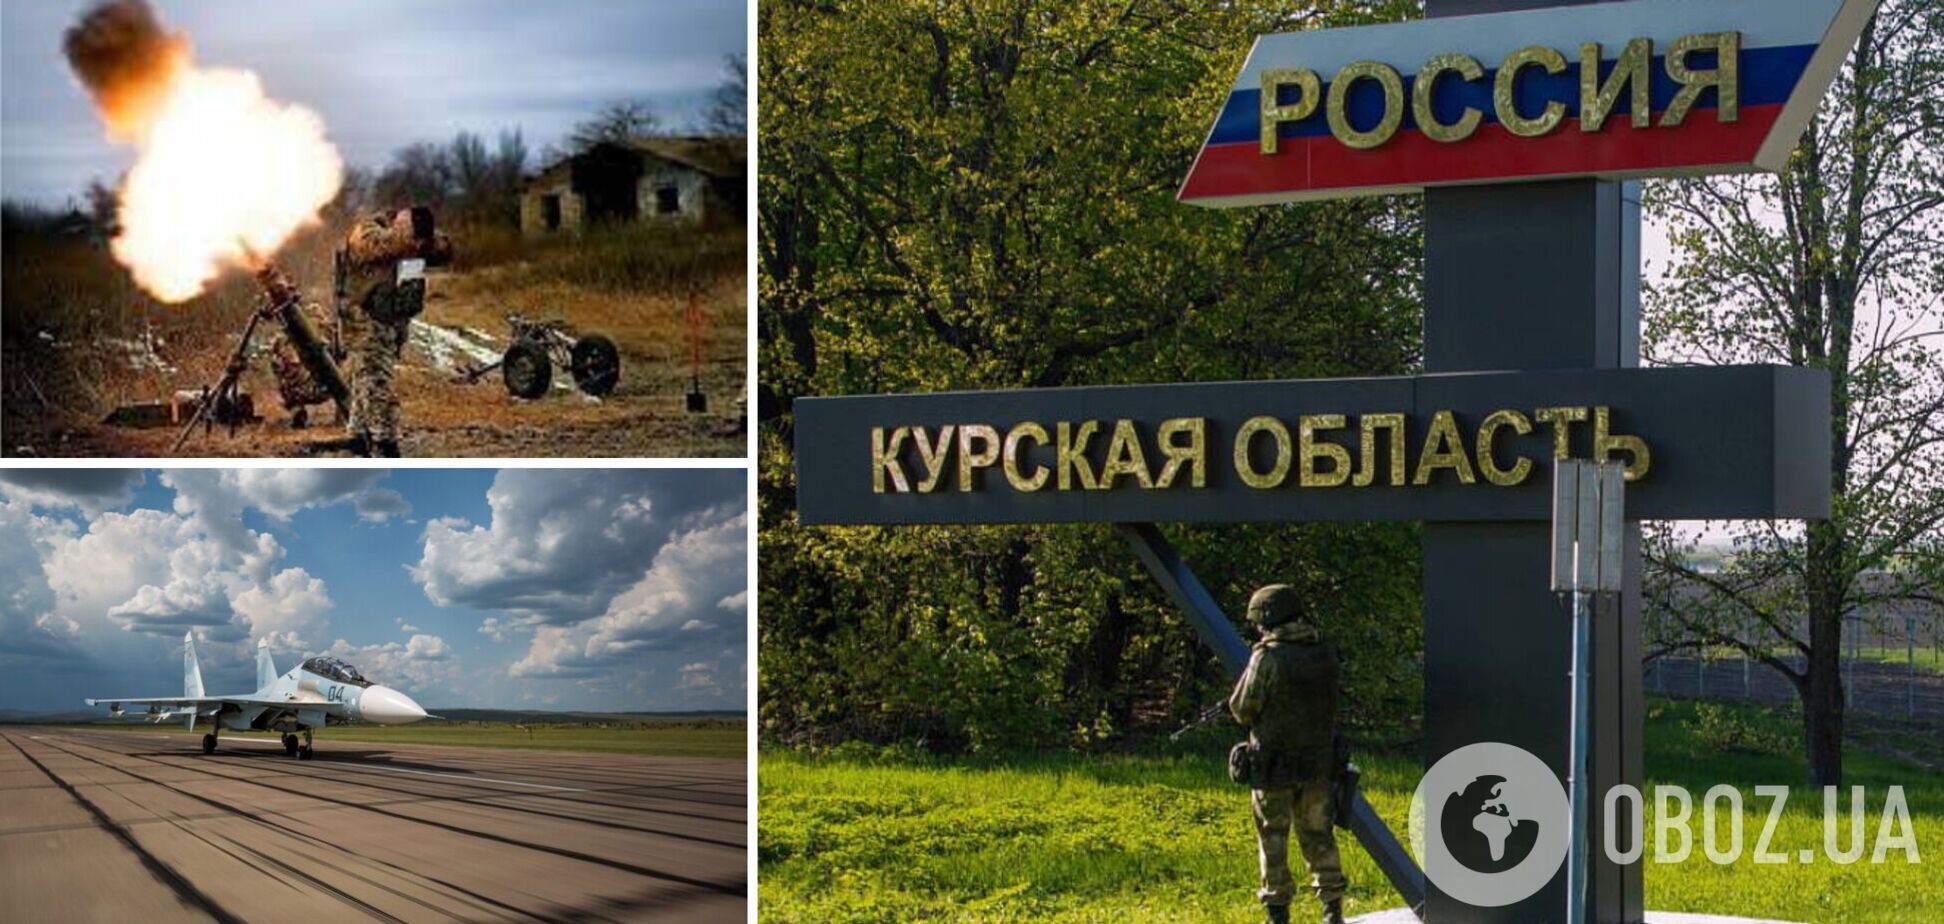 В Курской области РФ заявили об обстреле военного аэродрома из минометов: к границе с Украиной от него более 100 км